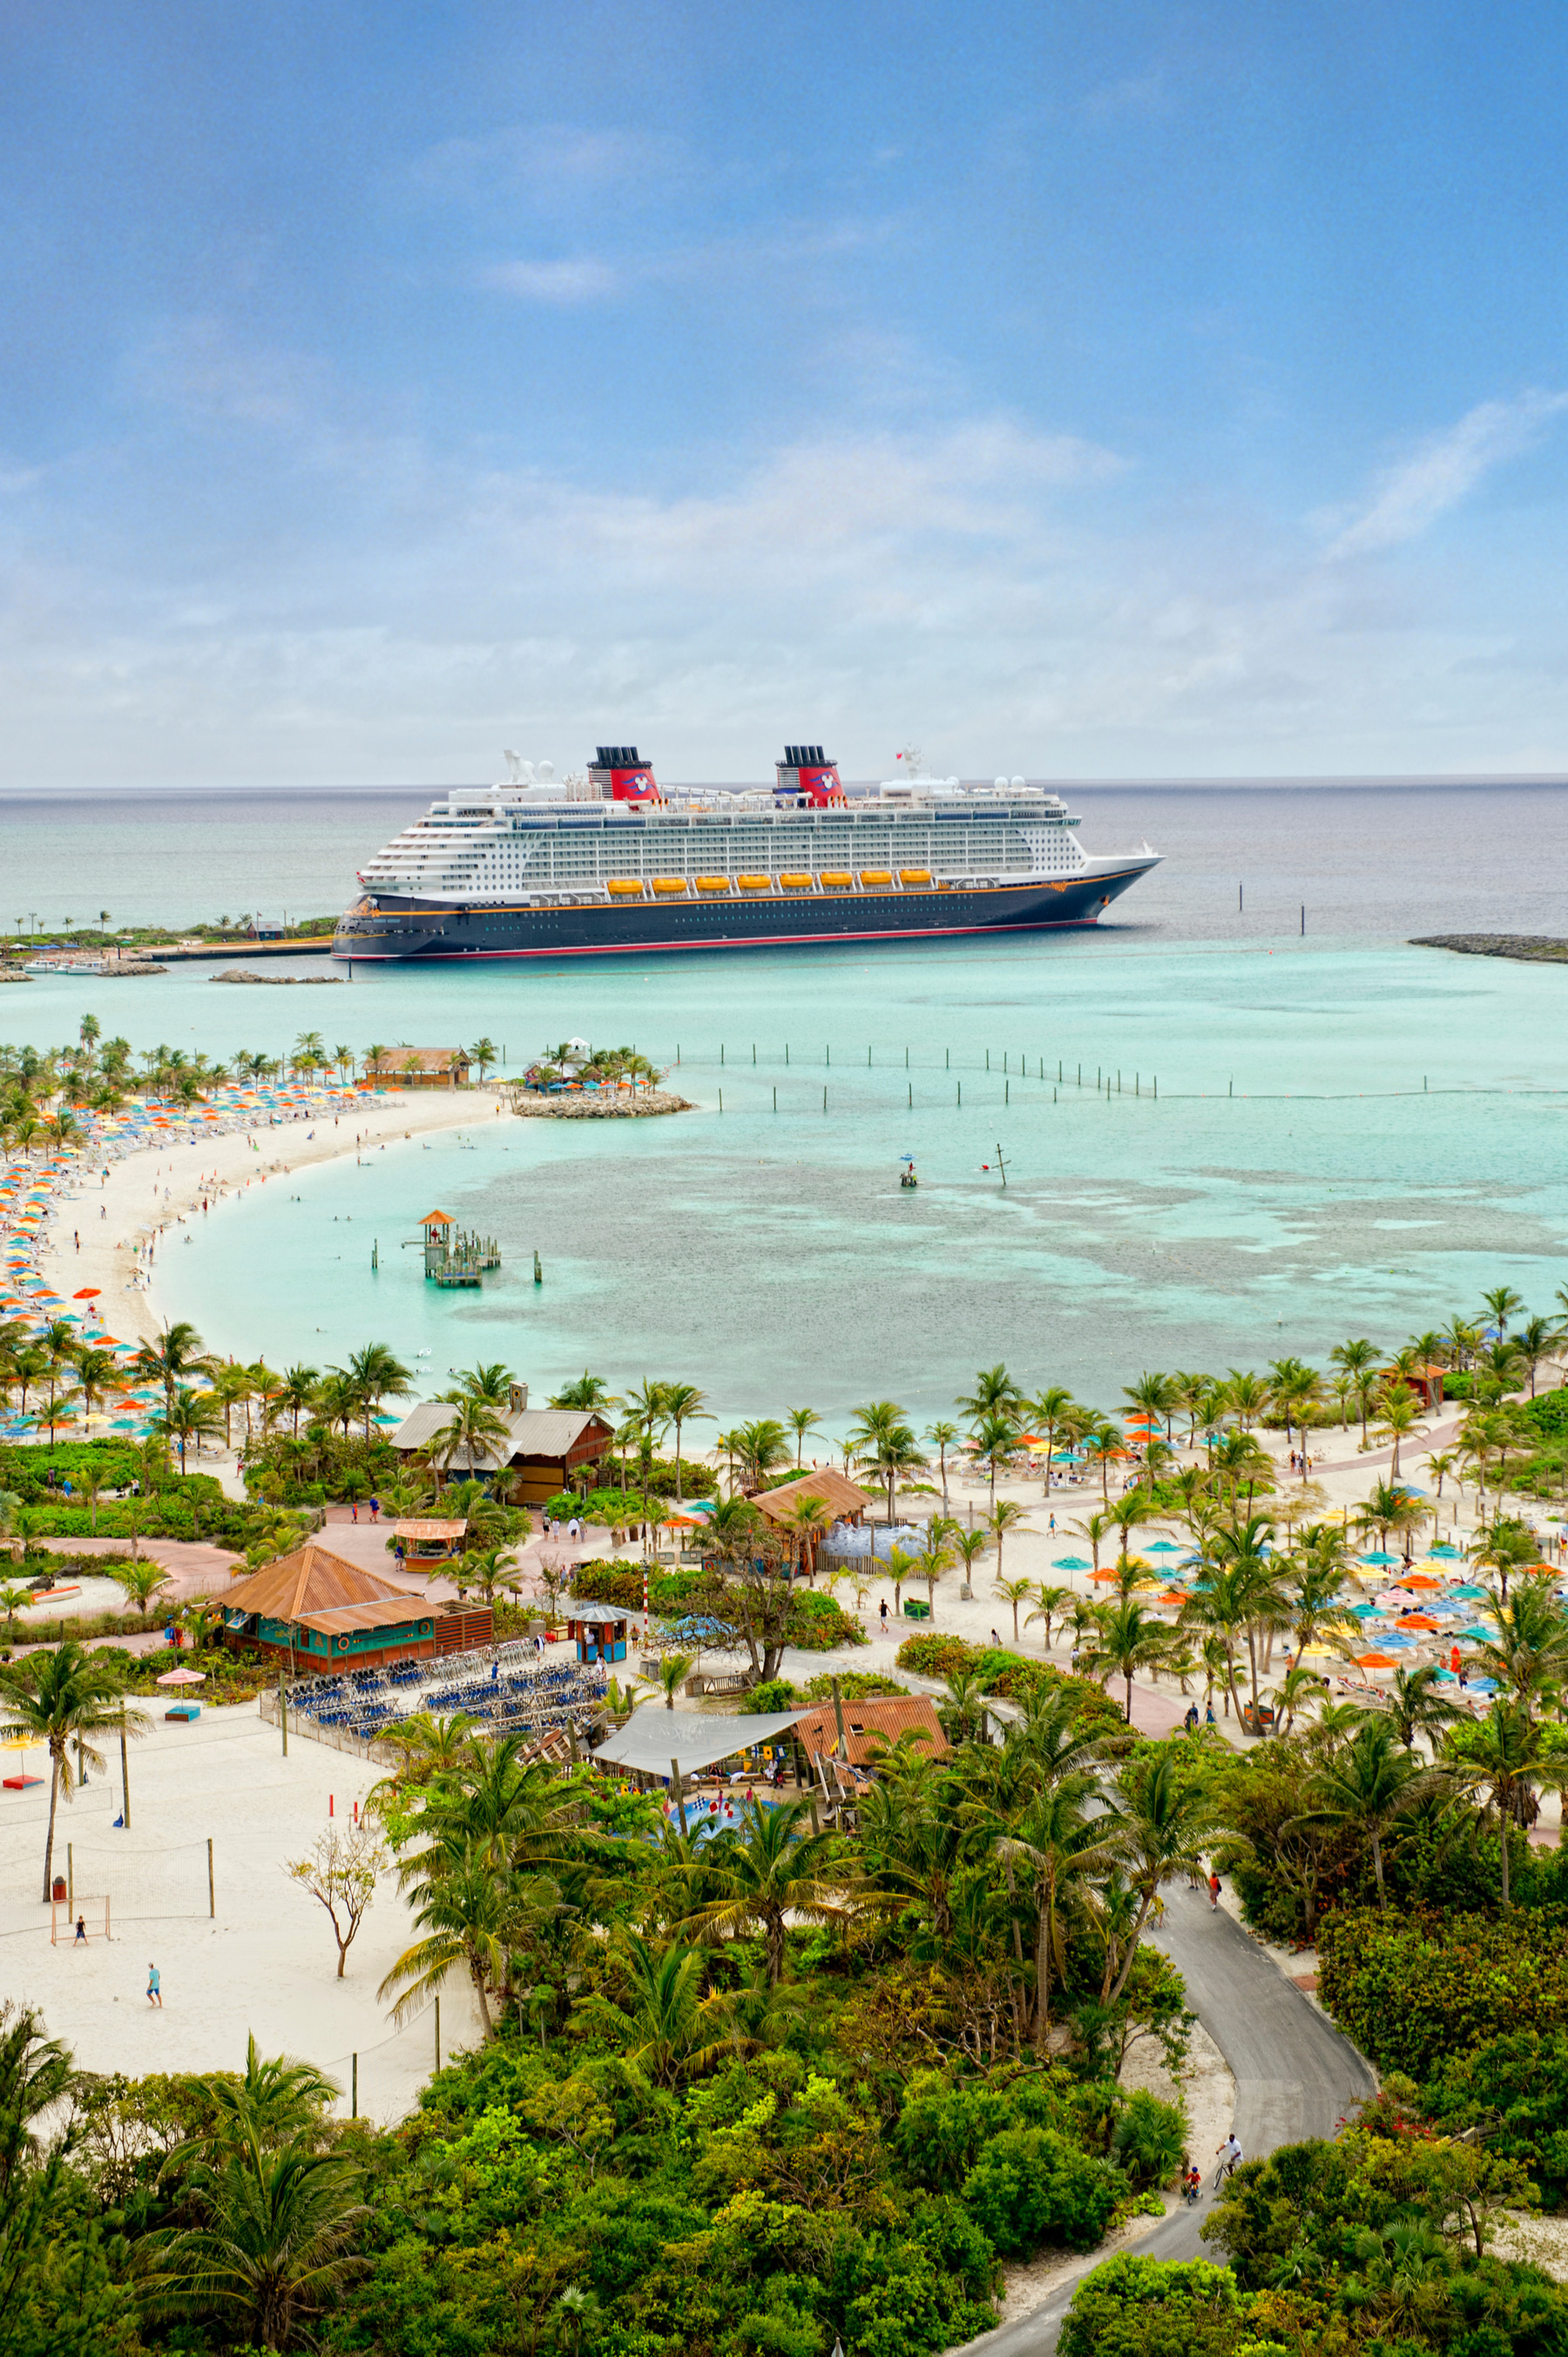 Castaway Cay, l'île privée de Disney Cruise Line dans les Bahamas